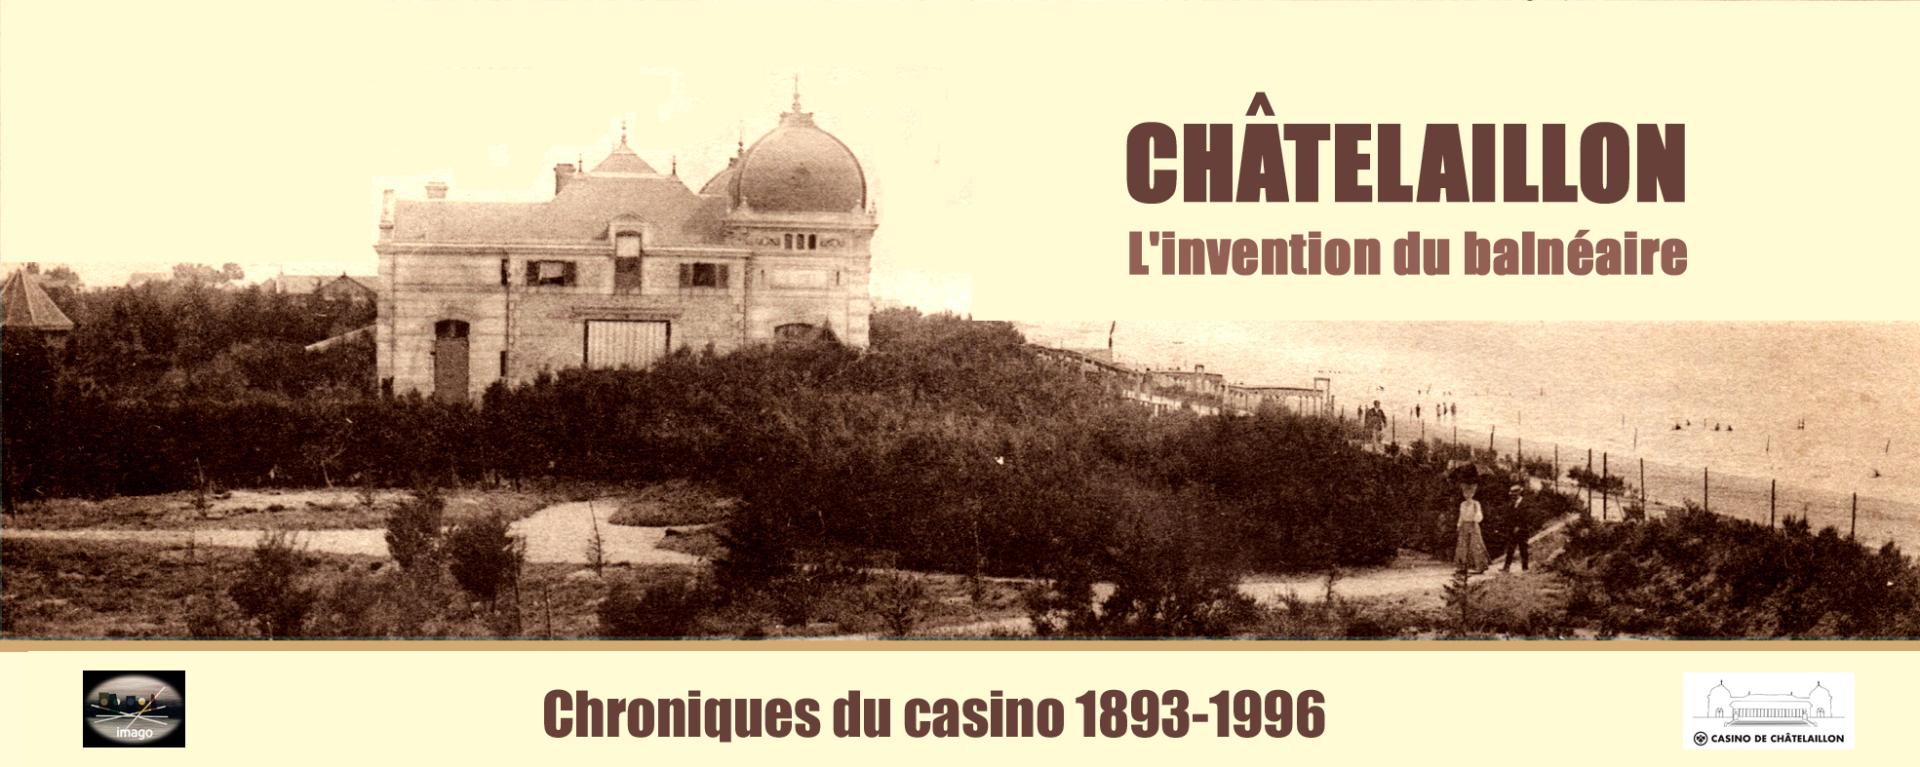 Page Facebook de Casino, chroniques d'un siècle